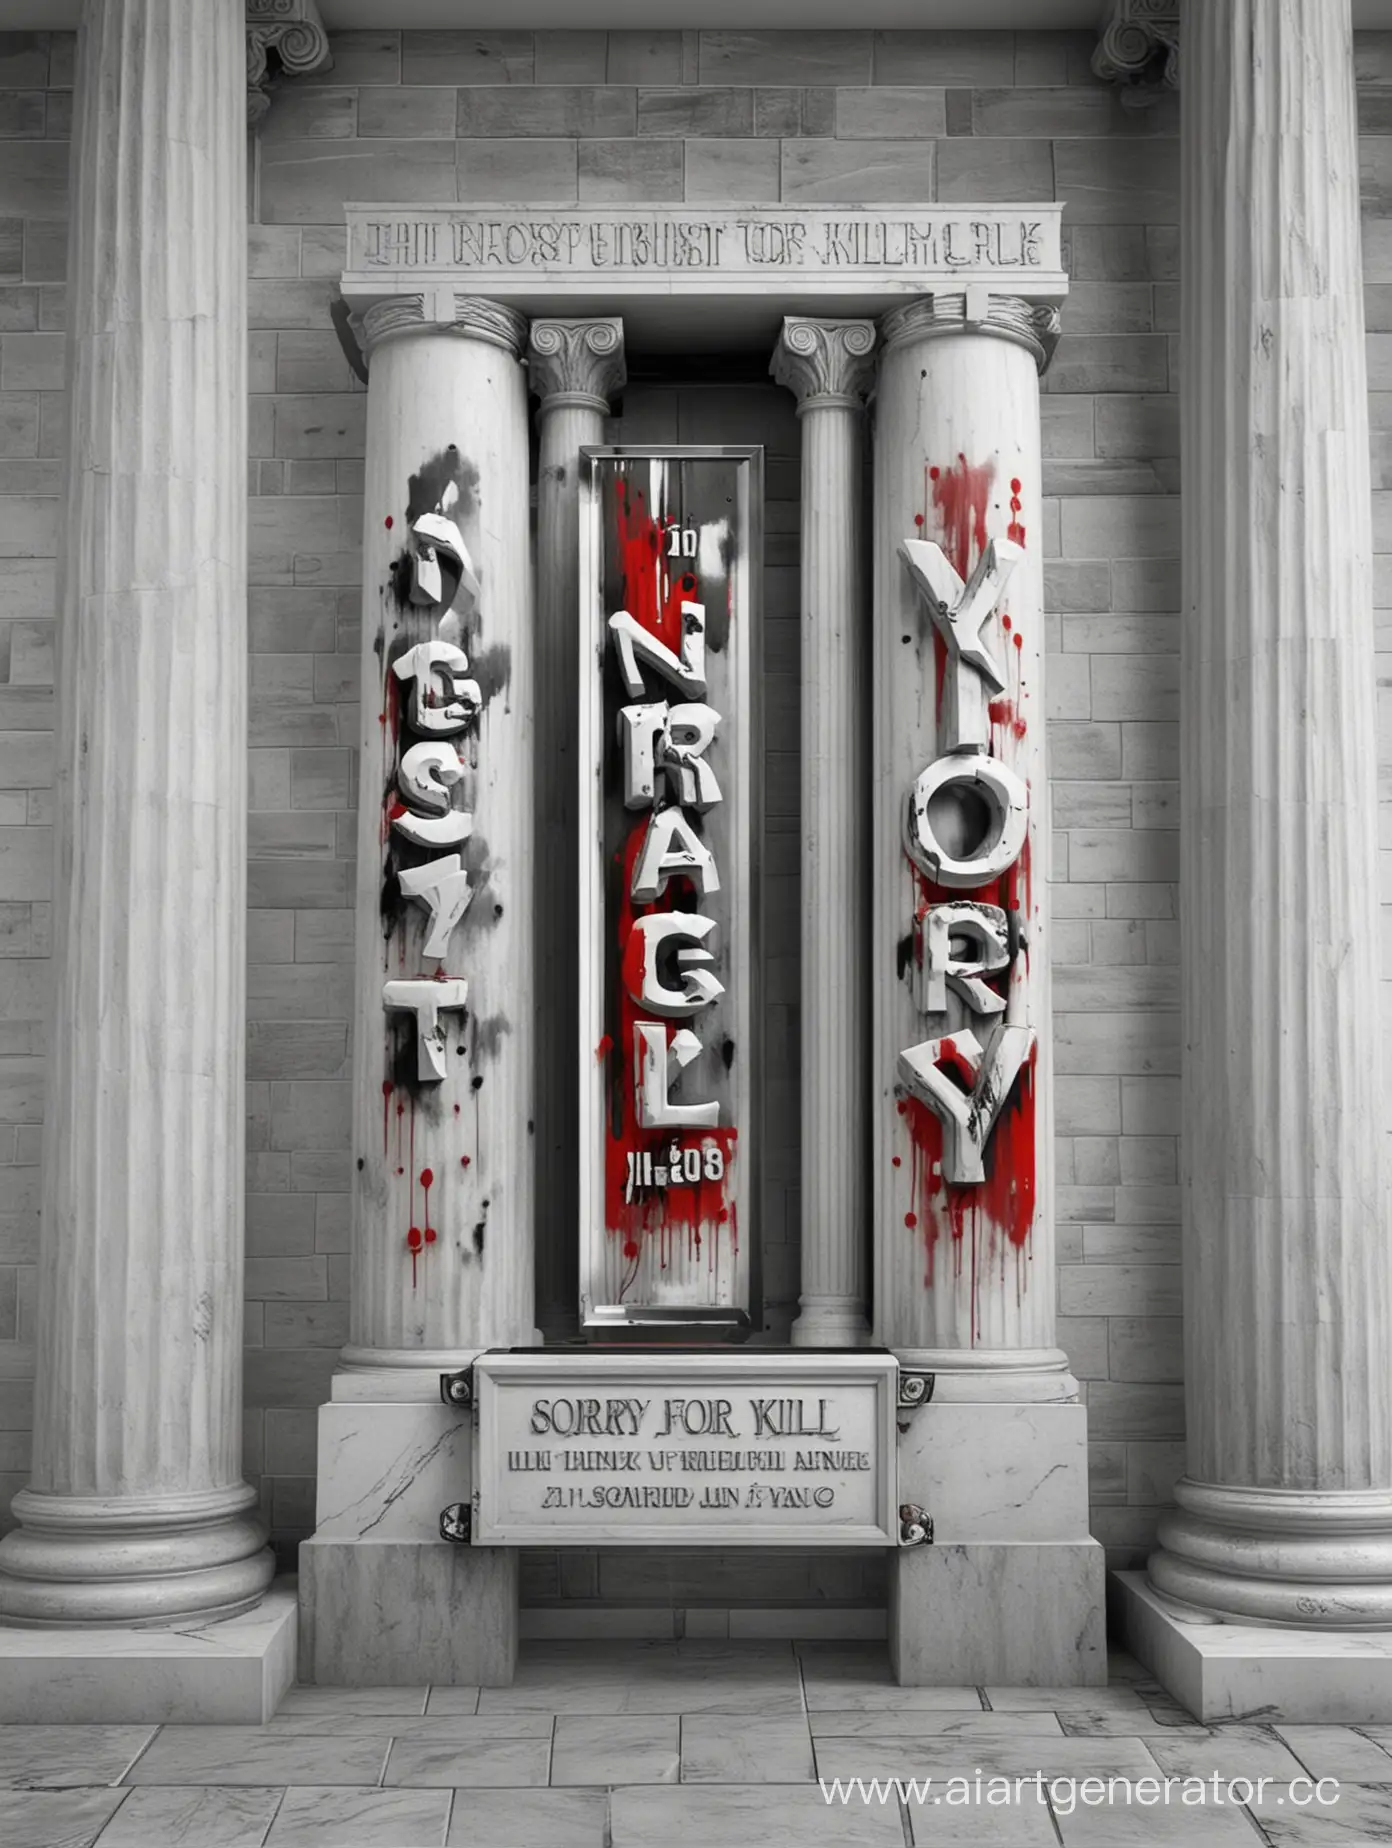 фон сделанный в 3d серо черно красным по краям две белый колоны и на табличке закрепленной между колонами надпись "Sorry for kill"